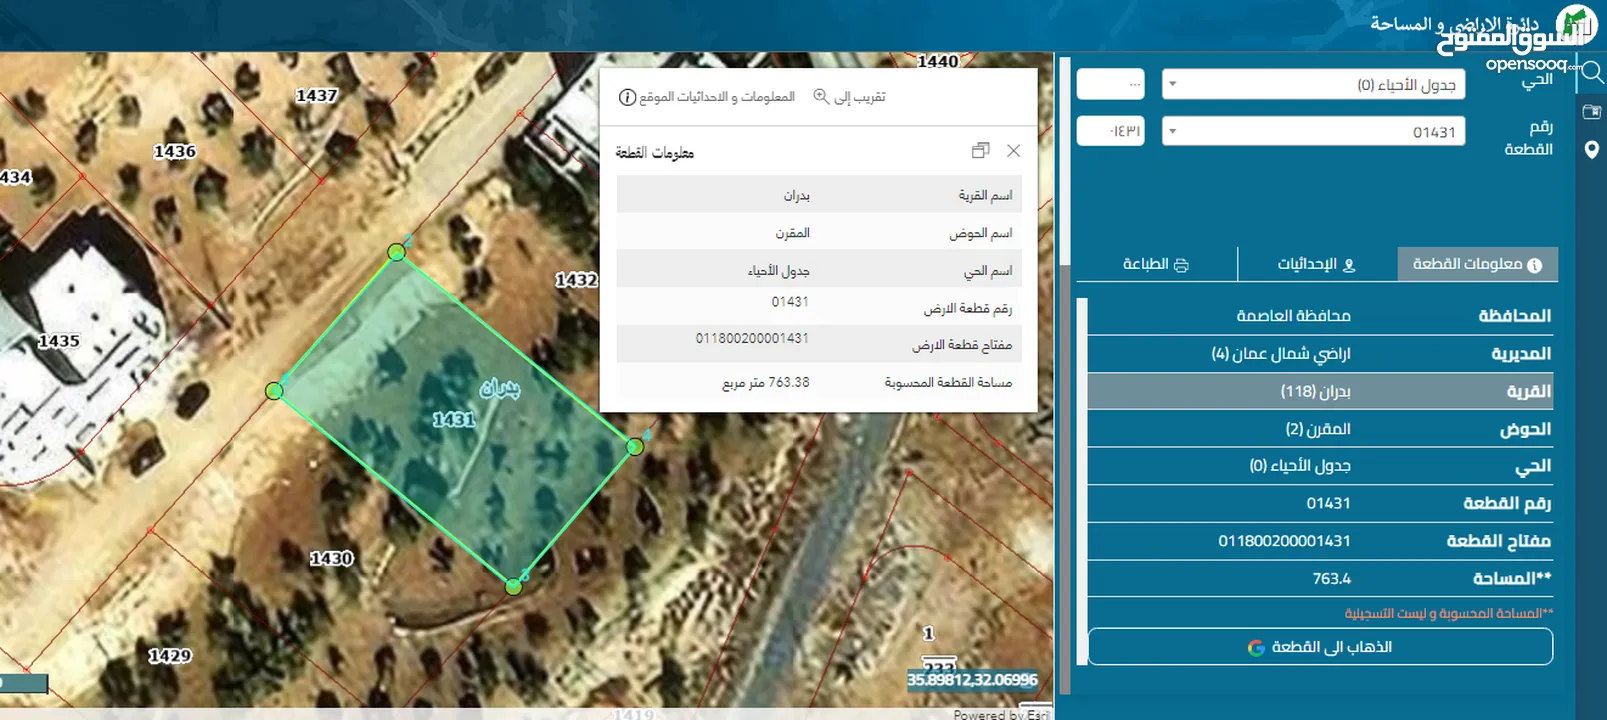 أرض للبيع شمال عمان شفا بدران المقرن قطعة ارض سكنية مميزة على شارعين خلفي وأمامي مساحتها 765 م